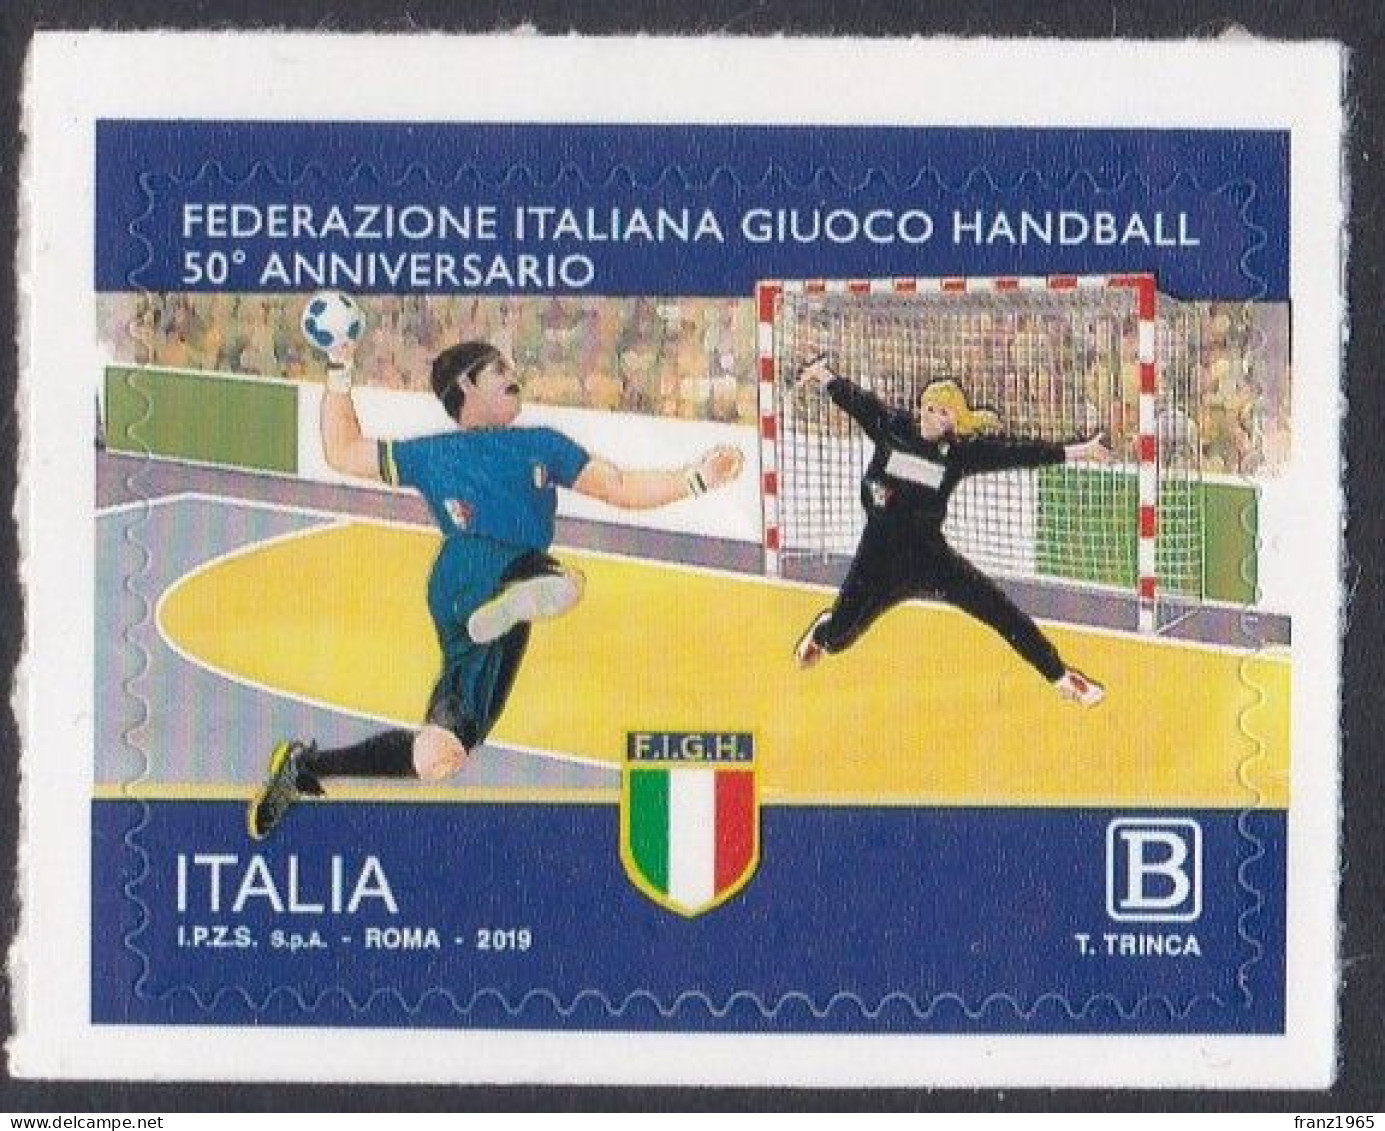 Italian Handball Federation - 2019 - Balonmano